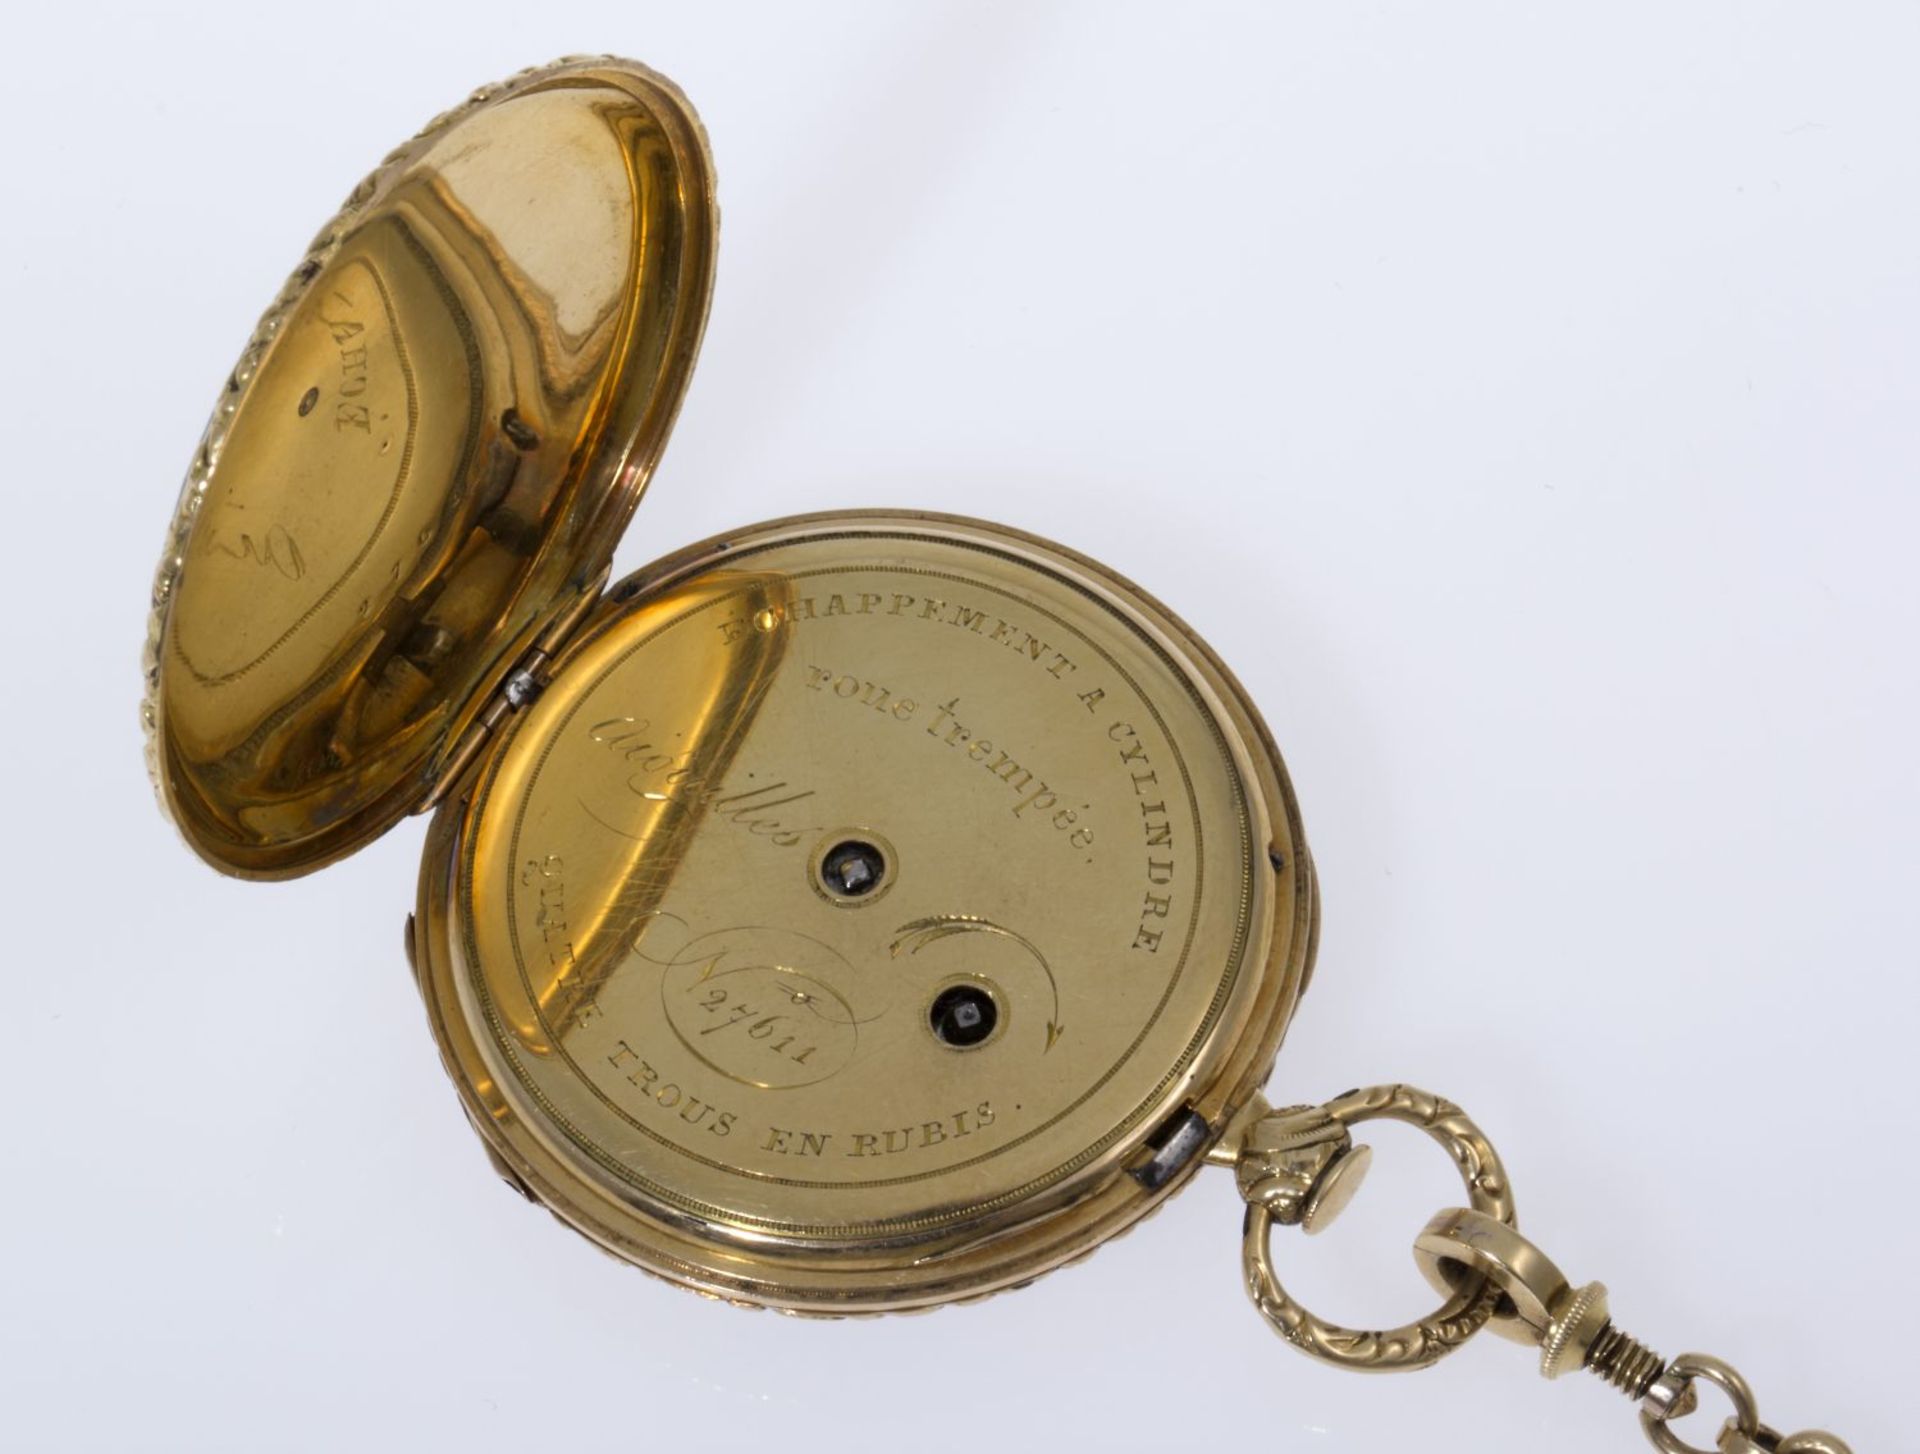 Dekorative Taschenuhr an UhrenketteGehäuse, Cuvette und Kette aus Gelbgold 750 (geprüft). Gehäuse - Bild 3 aus 6